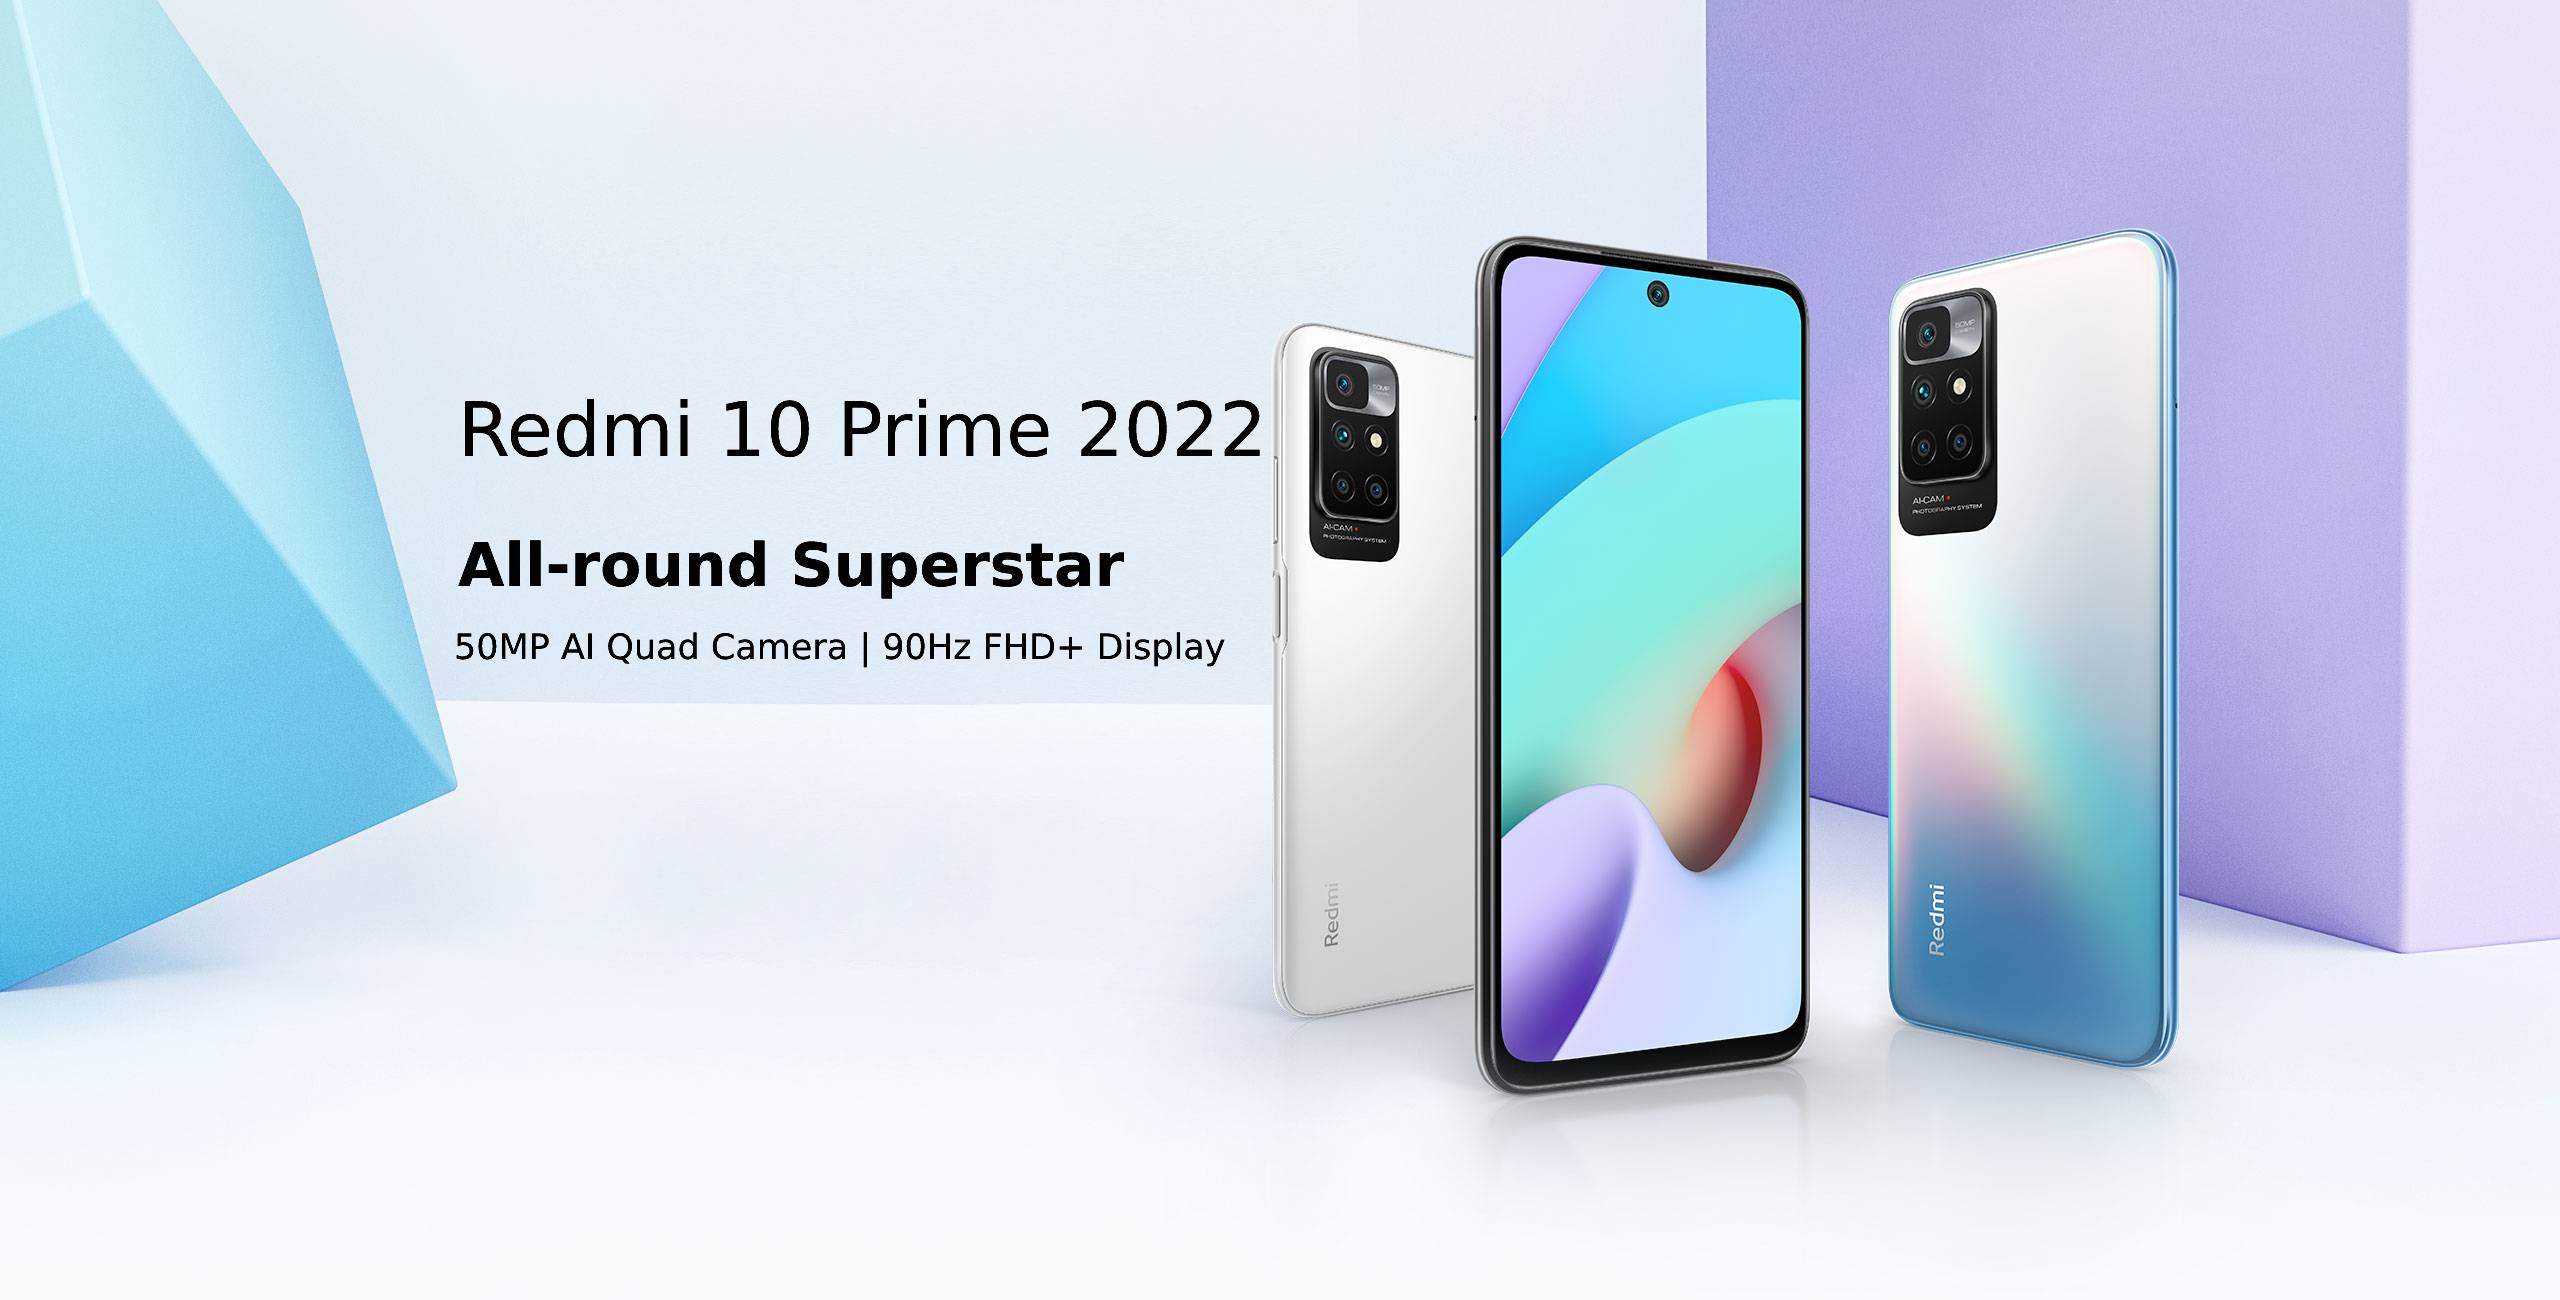 Redmi 10 Prime 2022 